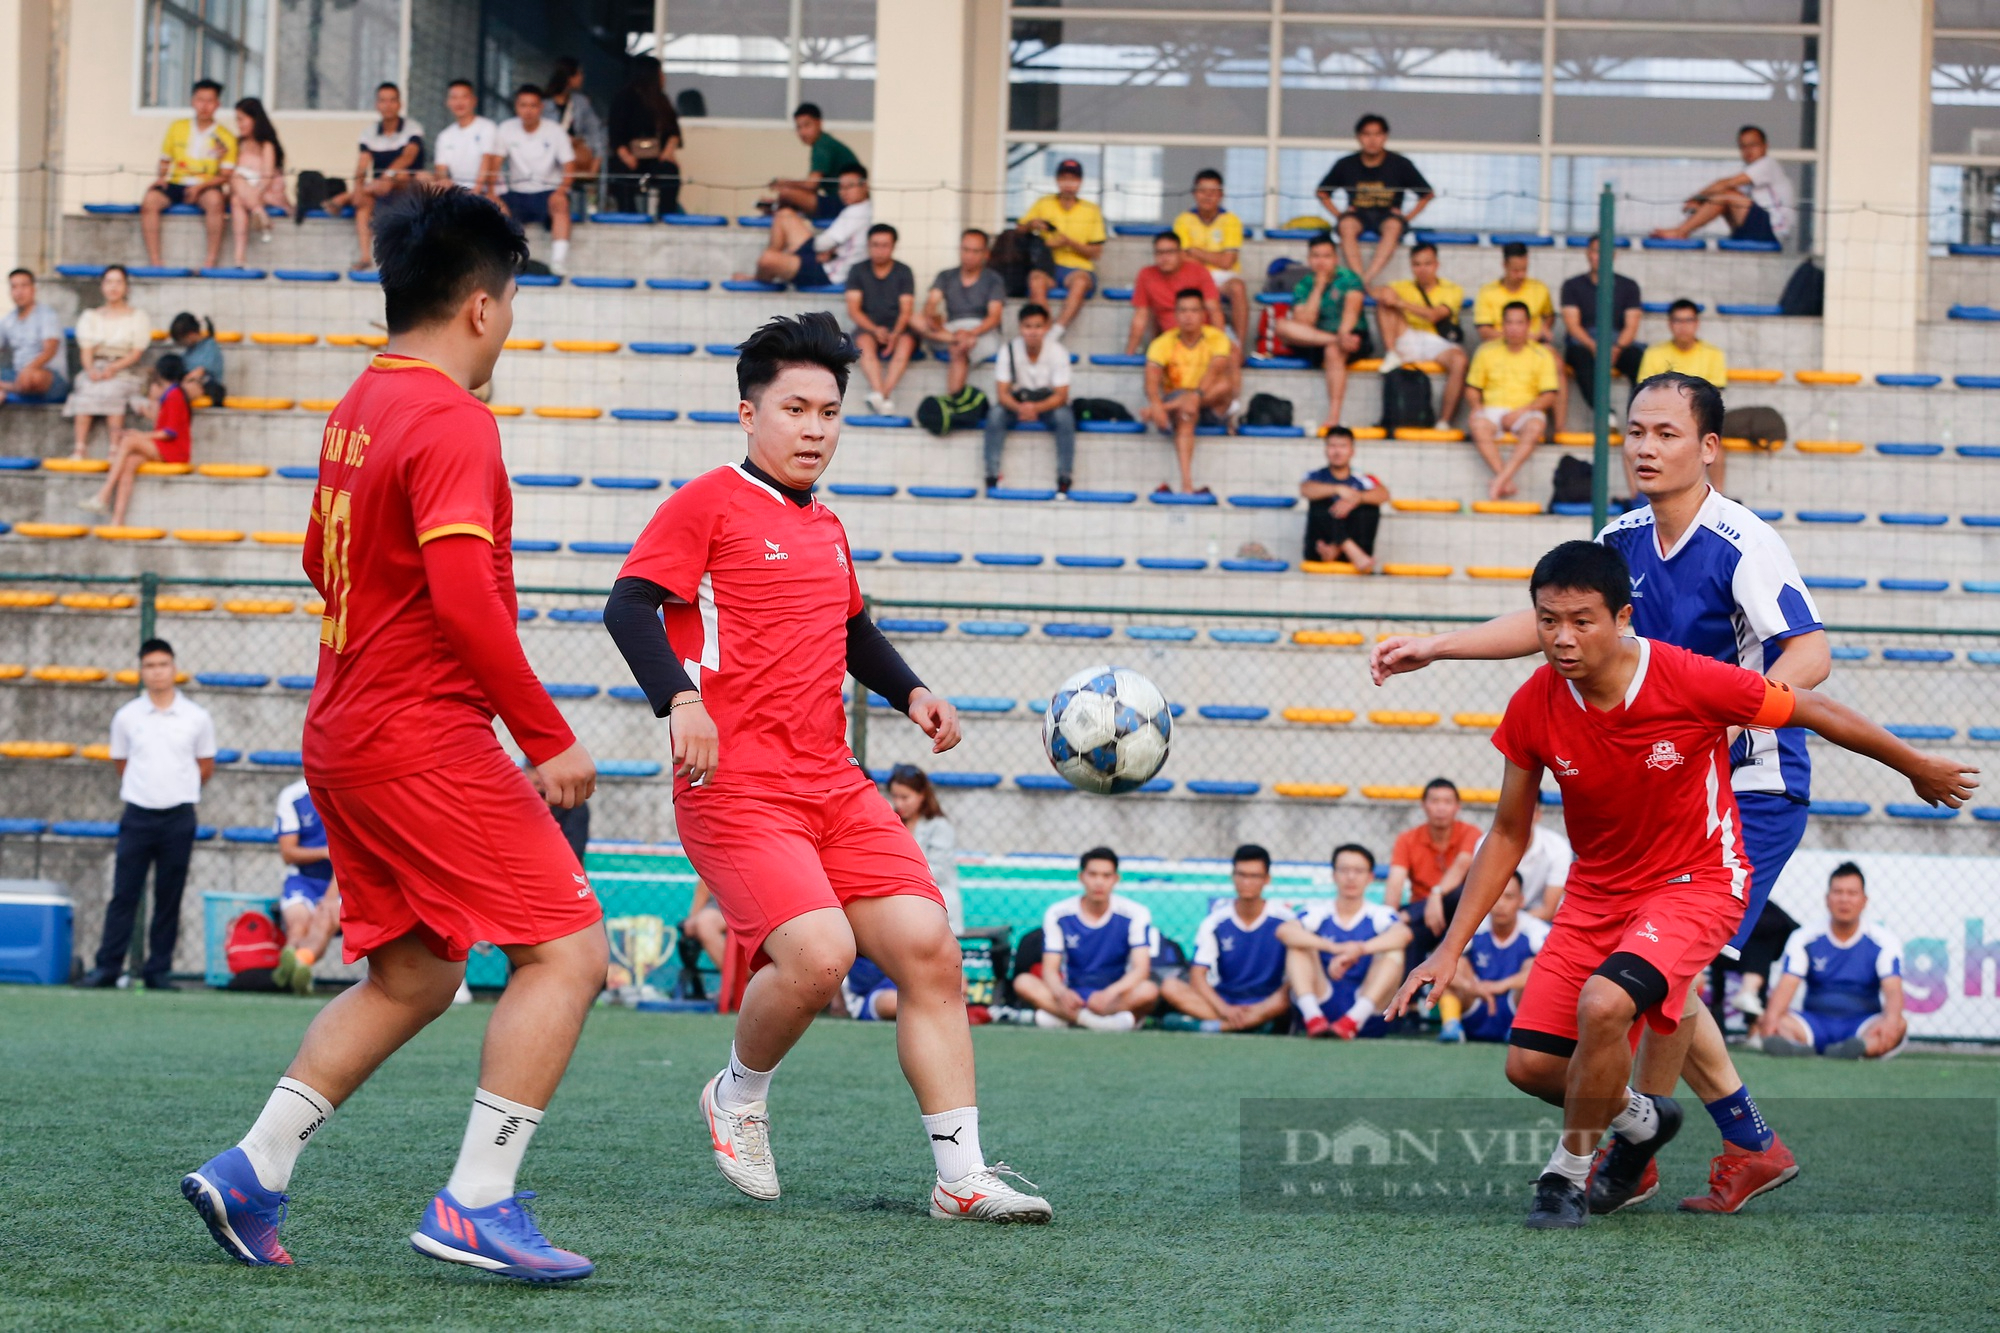 Đội bóng VOV chính thức lên ngôi vô địch sau chiến thắng nghẹt thở trước báo Lao Động - Ảnh 5.